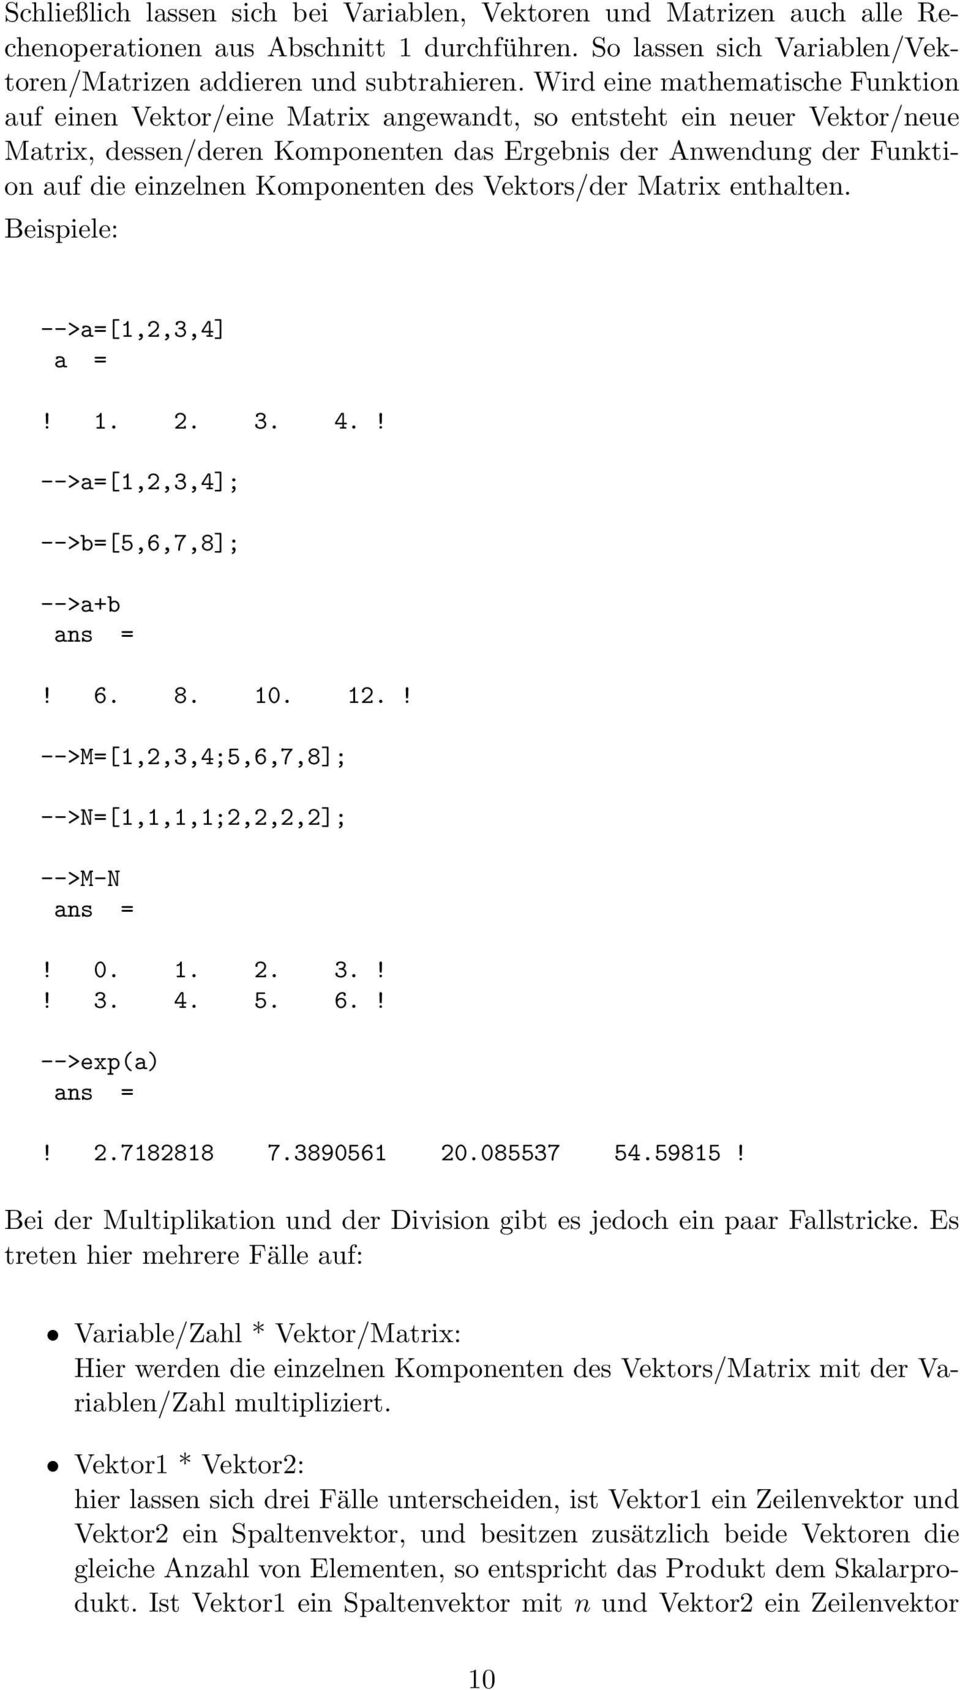 Komponenten des Vektors/der Matrix enthalten. Beispiele: -->a=[1,2,3,4]! 1. 2. 3. 4.! -->a=[1,2,3,4]; -->b=[5,6,7,8]; -->a+b ans =! 6. 8. 10. 12.